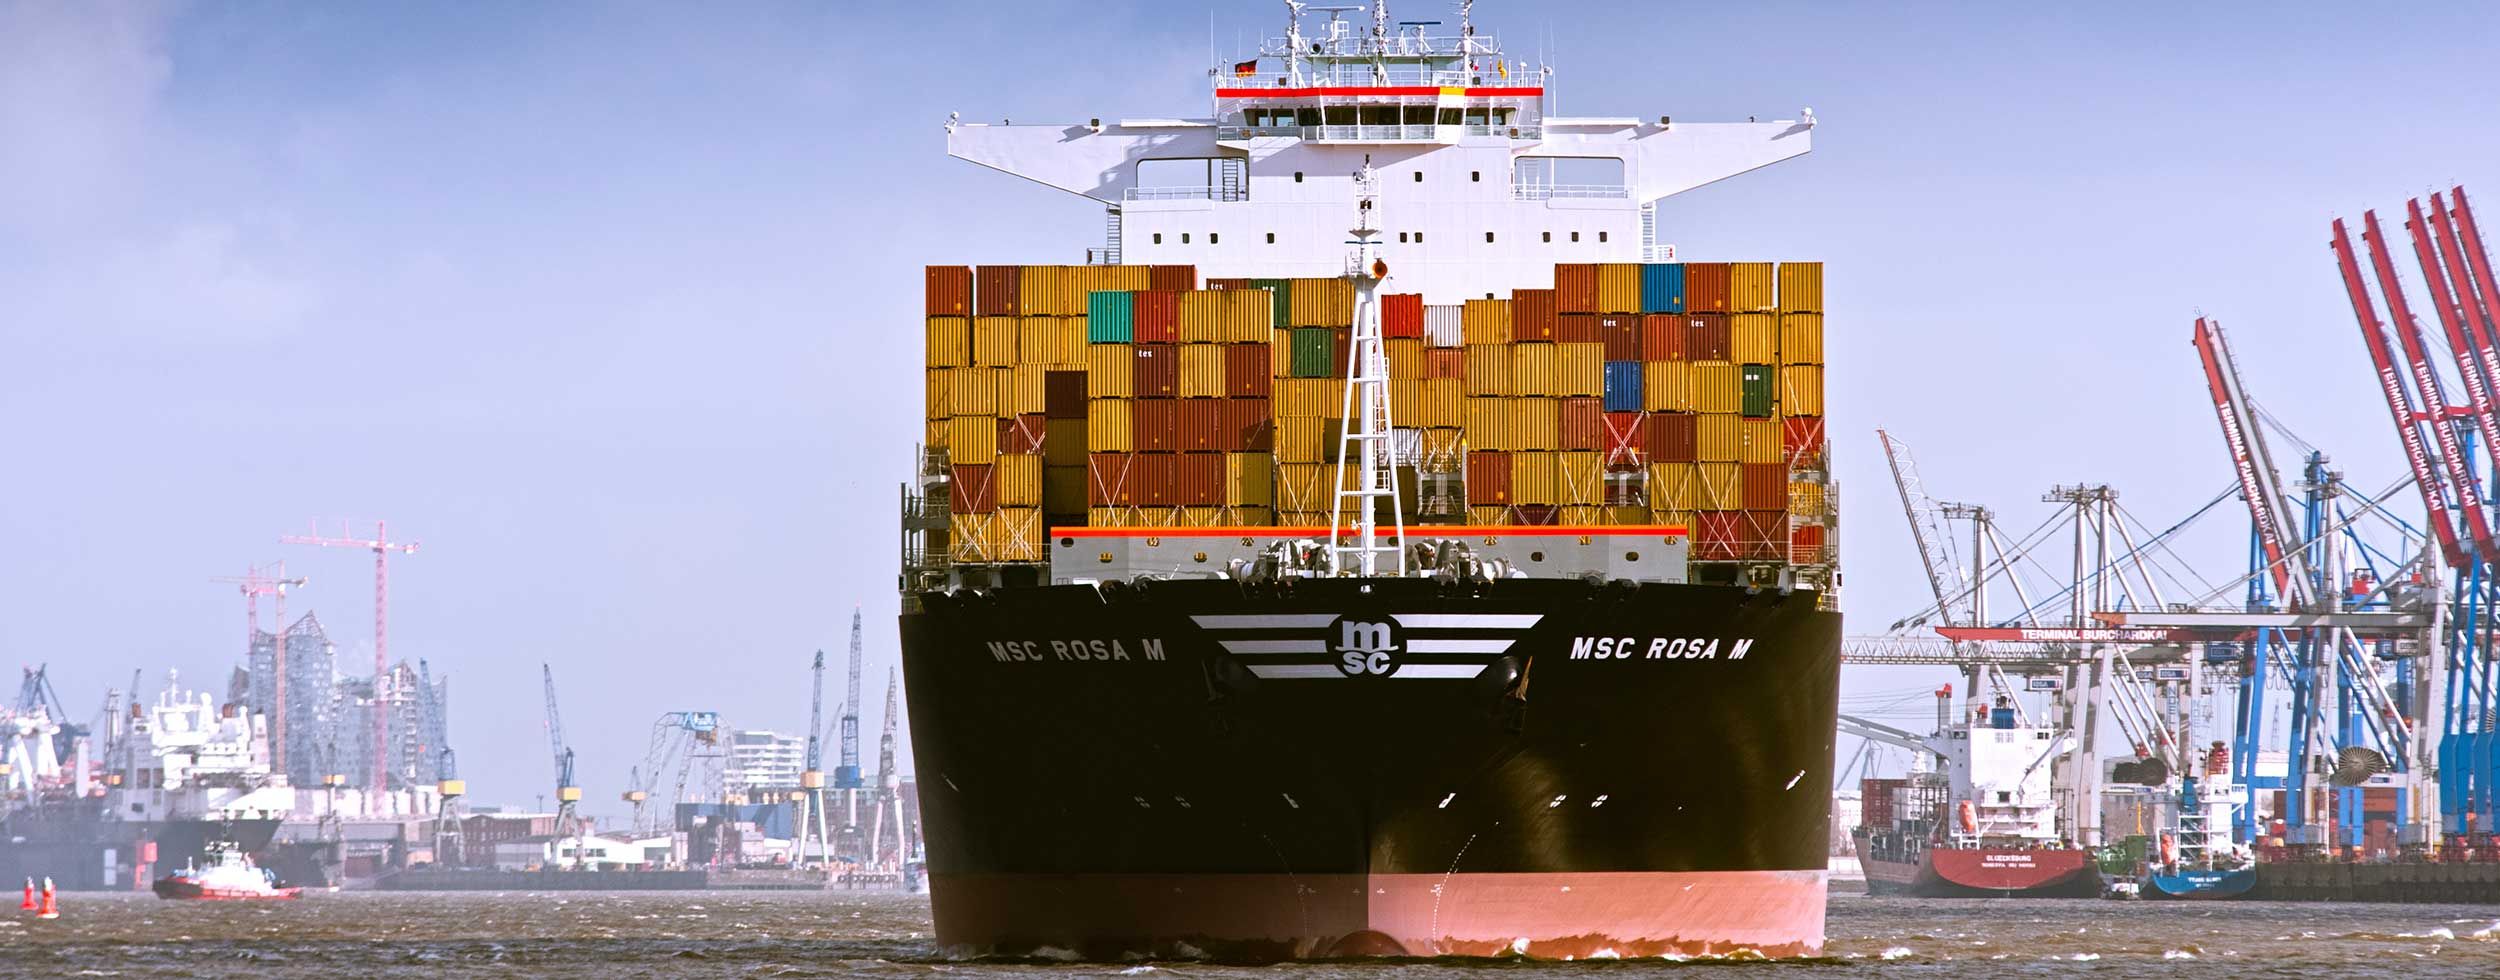 Bild: Containerschiff im Hafen